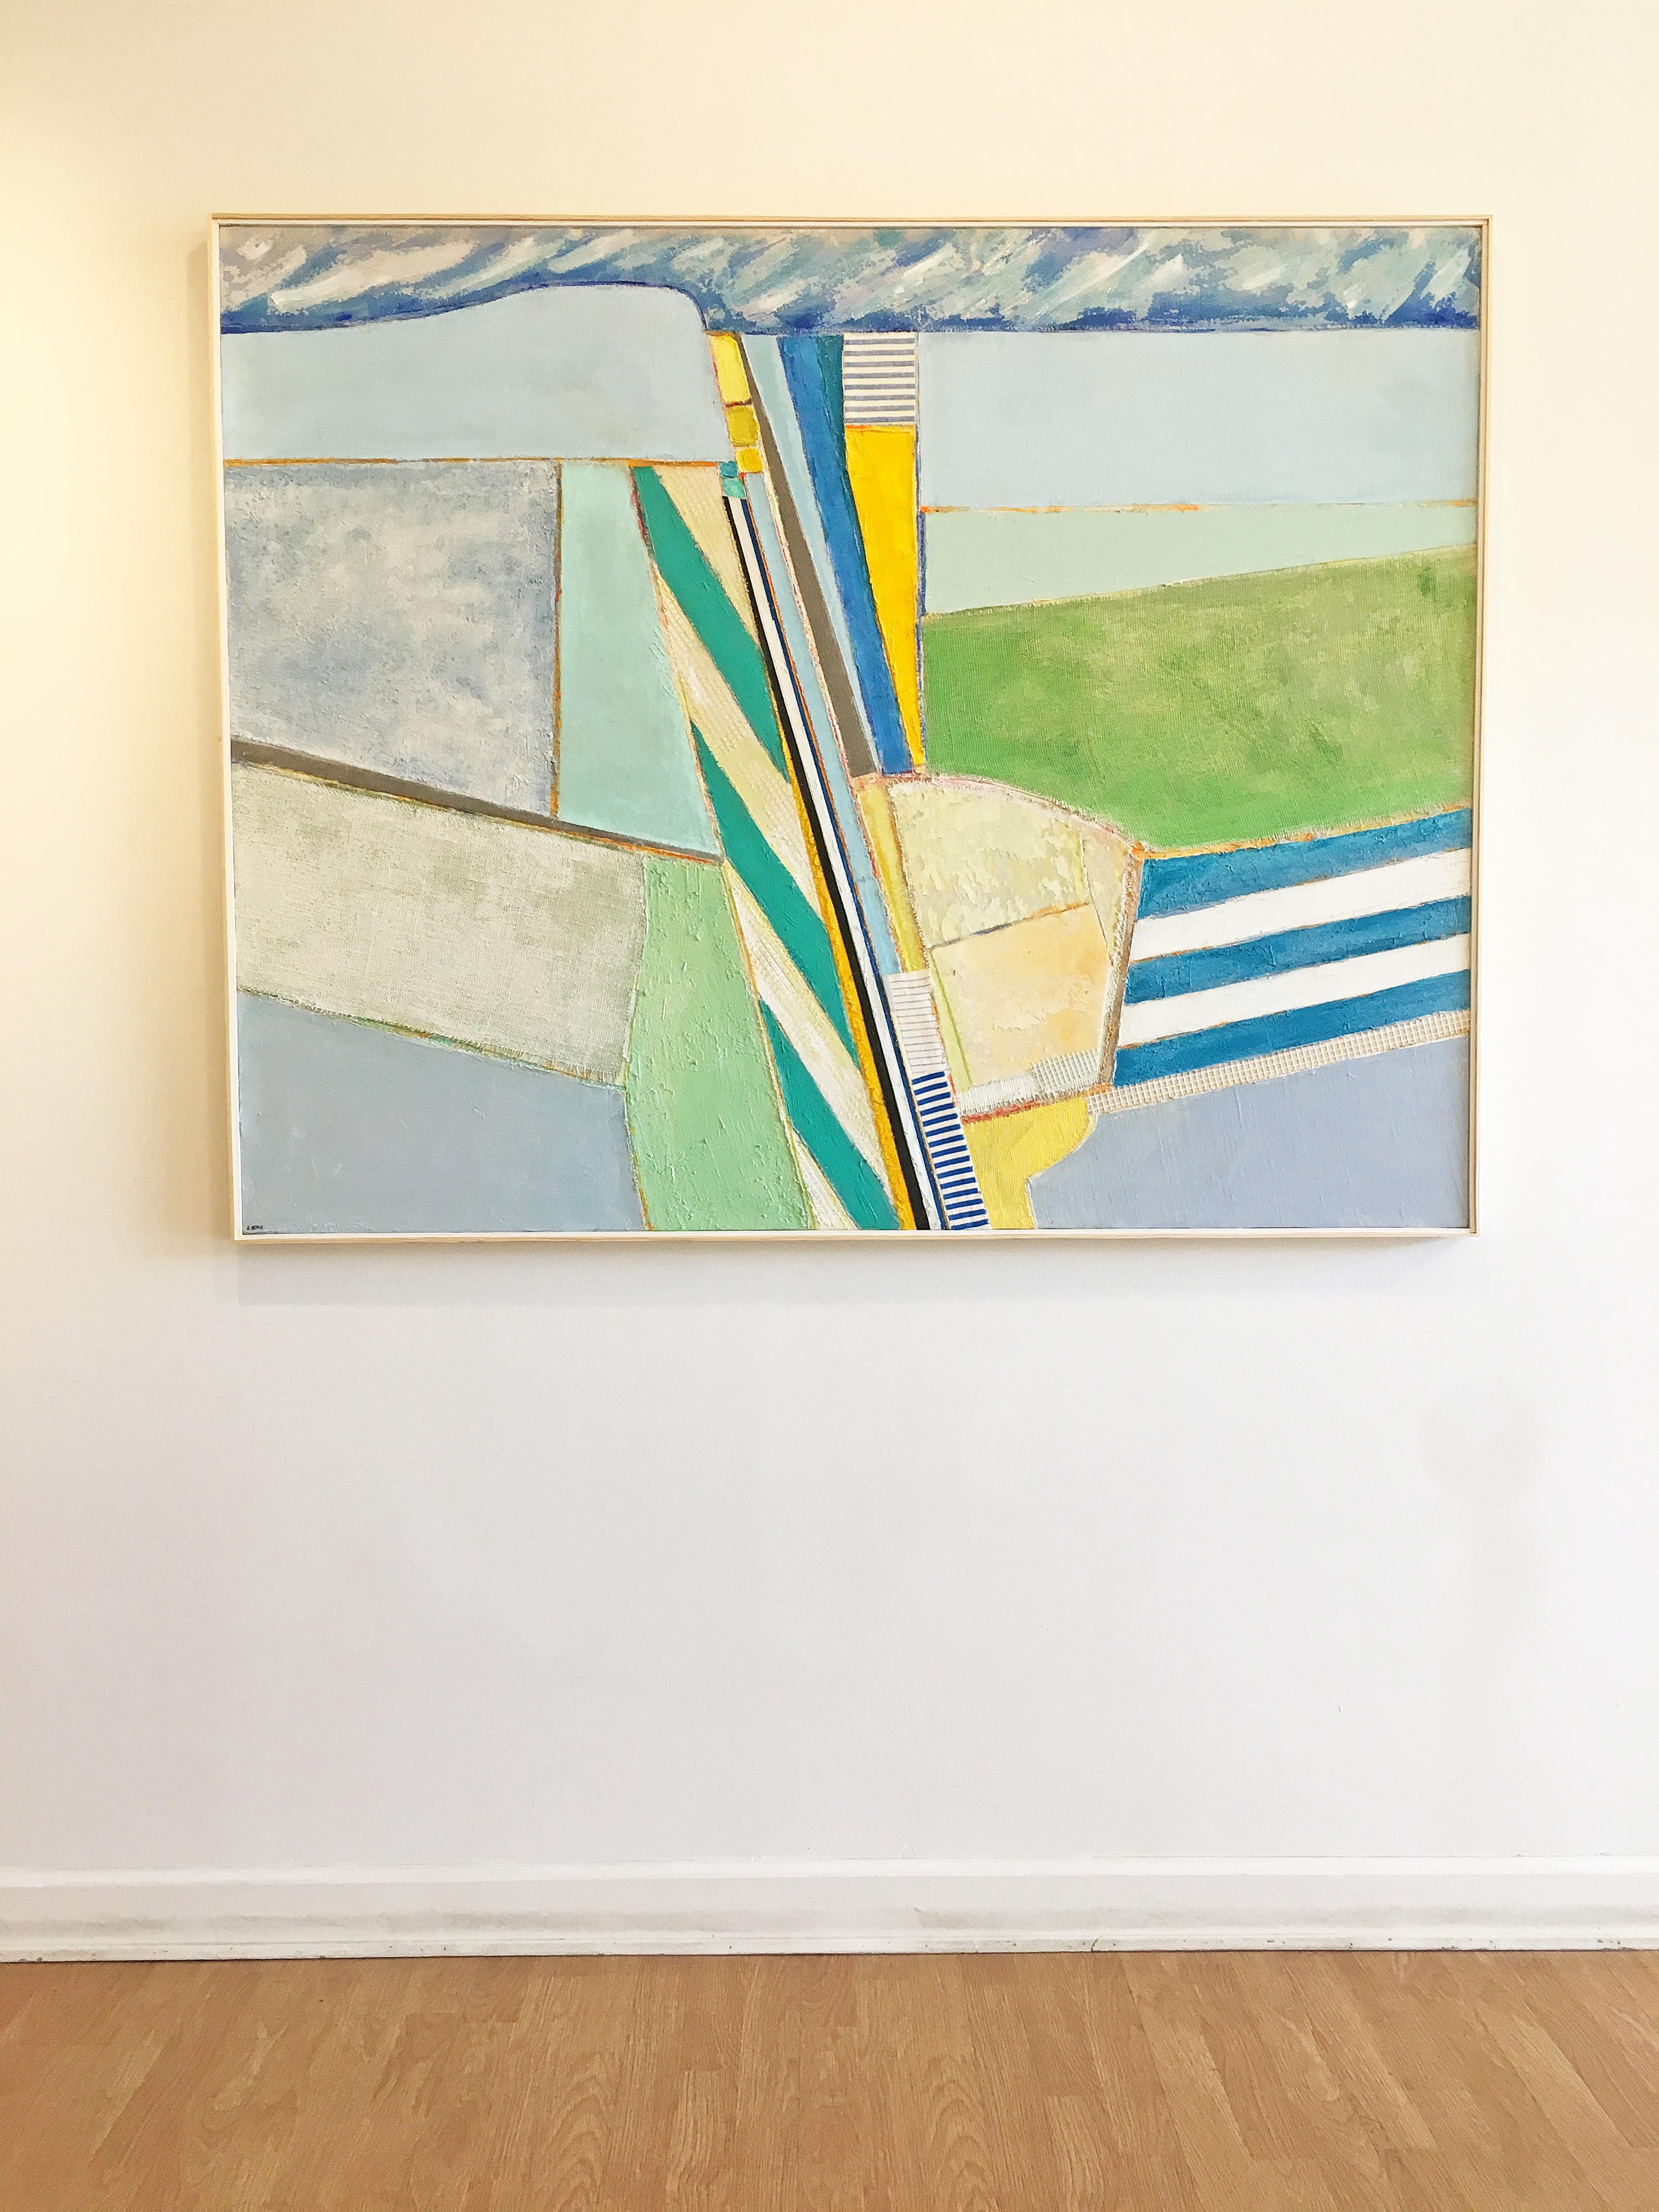 Coastal painting, Mixed media abstract, Eugene Healy, Stonington 2